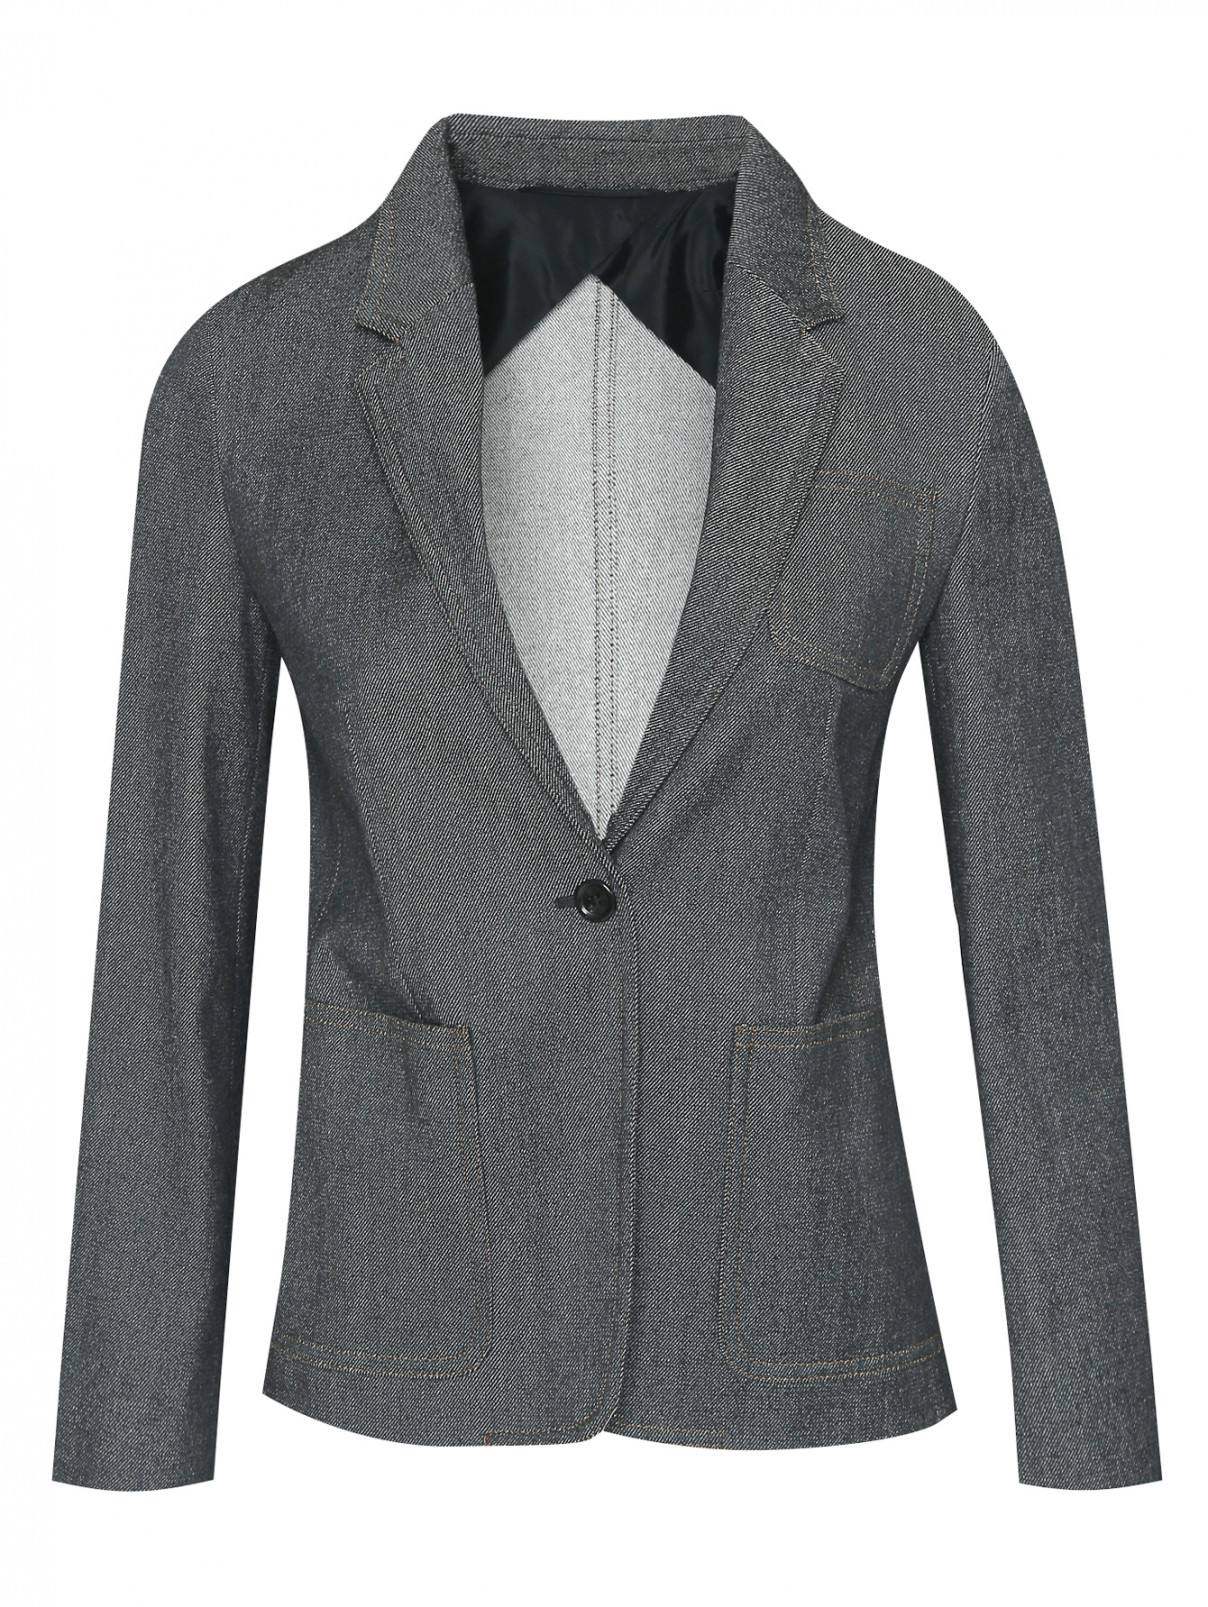 Жакет из шерсти с накладными карманами Max Mara  –  Общий вид  – Цвет:  Серый